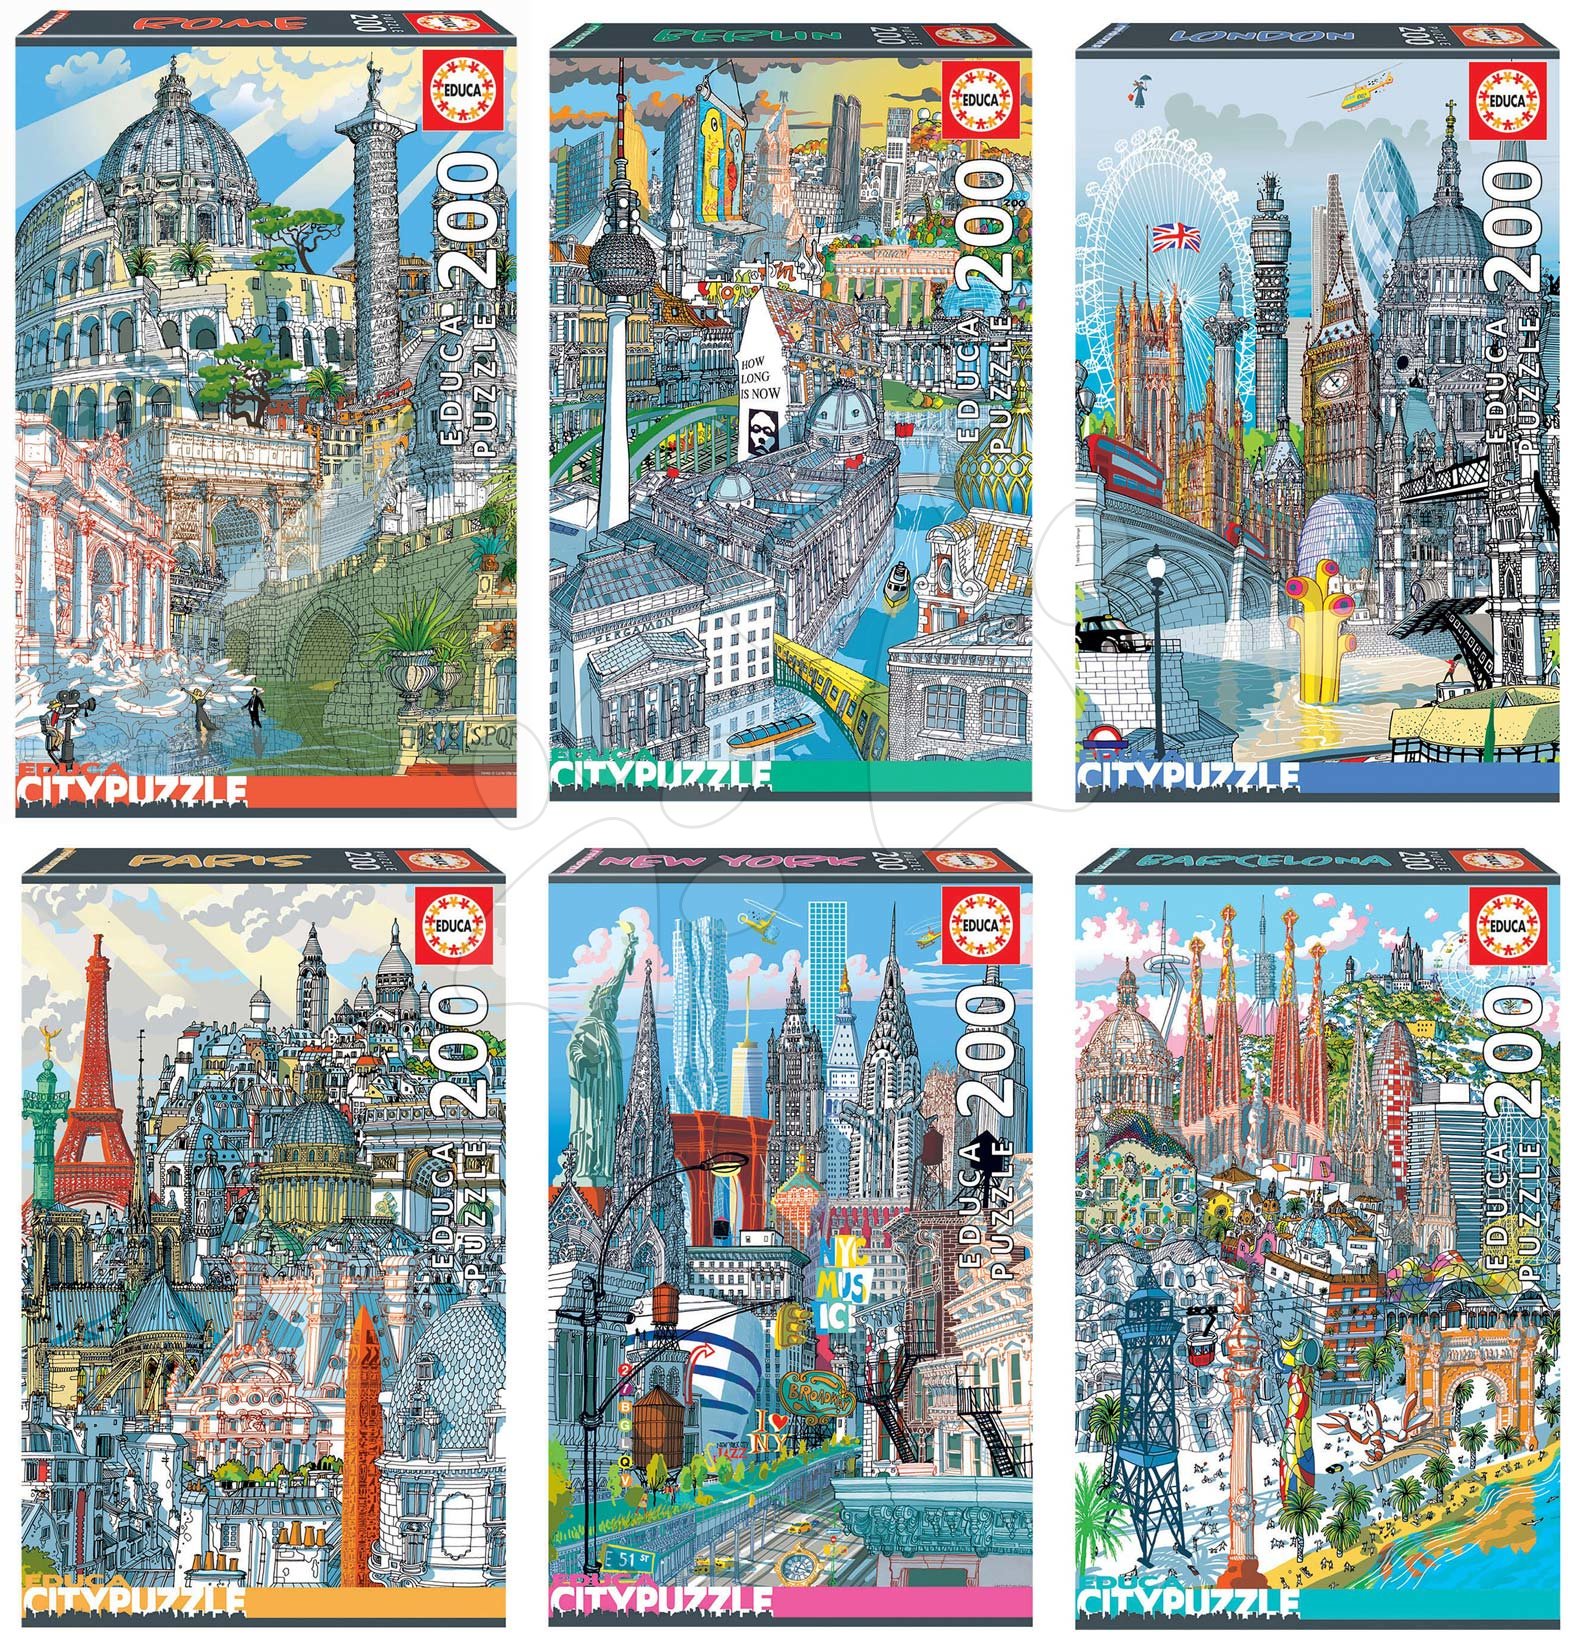 Dječje puzzle od 100 do 300 dijelova - Set Puzzle Citypuzzles Carlo Stanga Educa 6x200 dijelova - Rome, Berlin, London, Paris, New York, Barcelona ilustrator od 8 godina